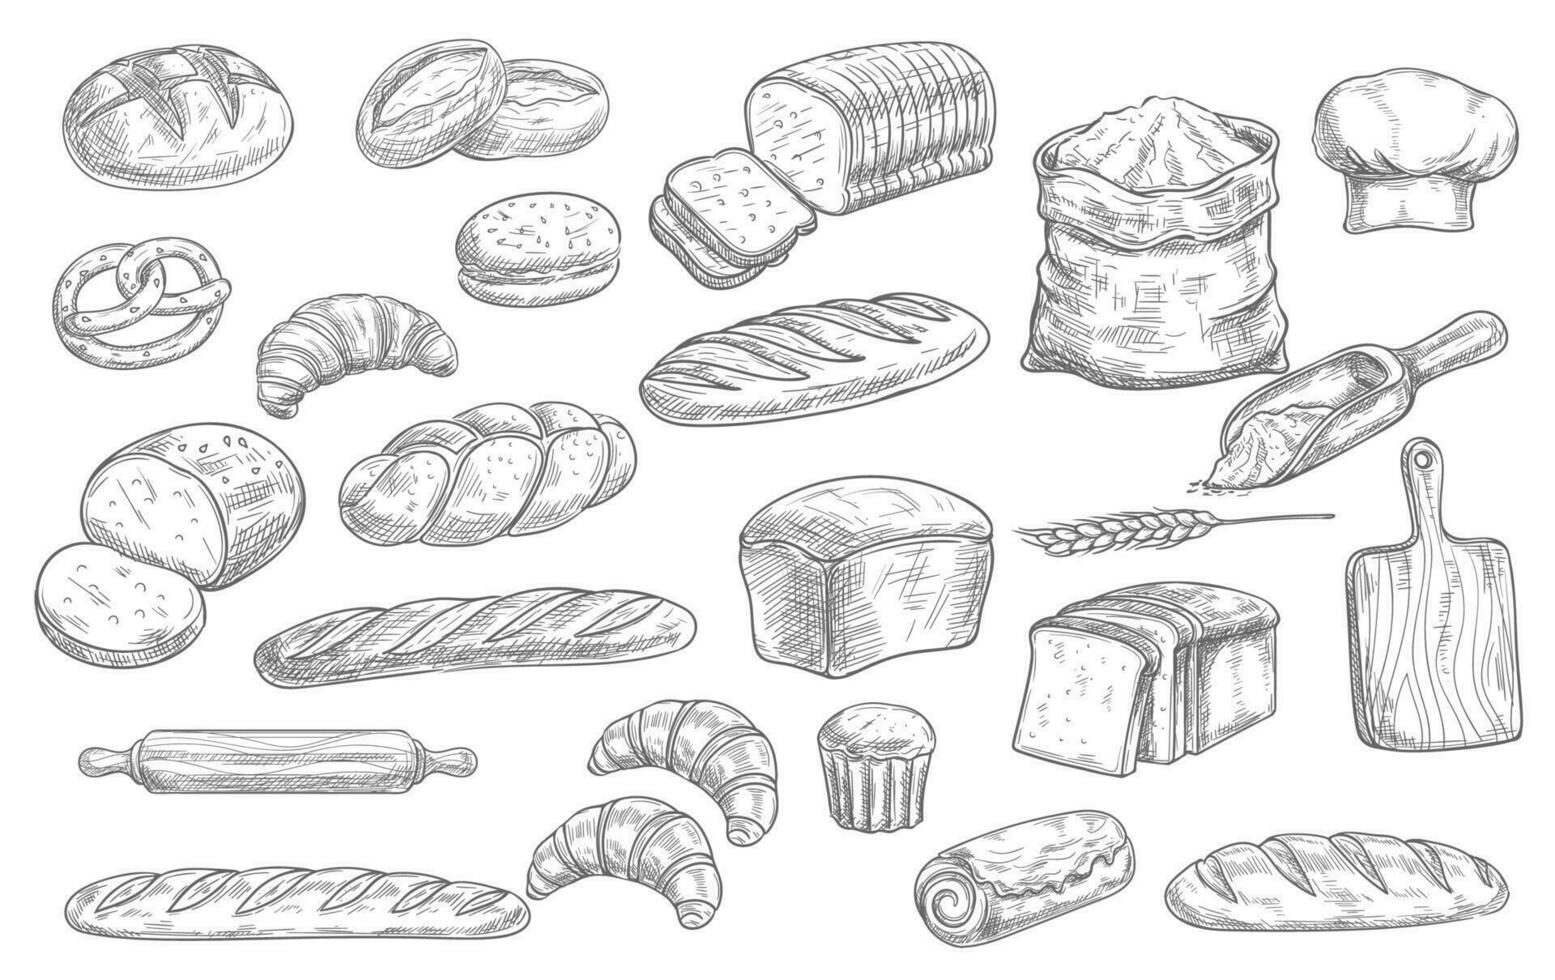 bröd och bageri mat skisser, graverat bakverk vektor